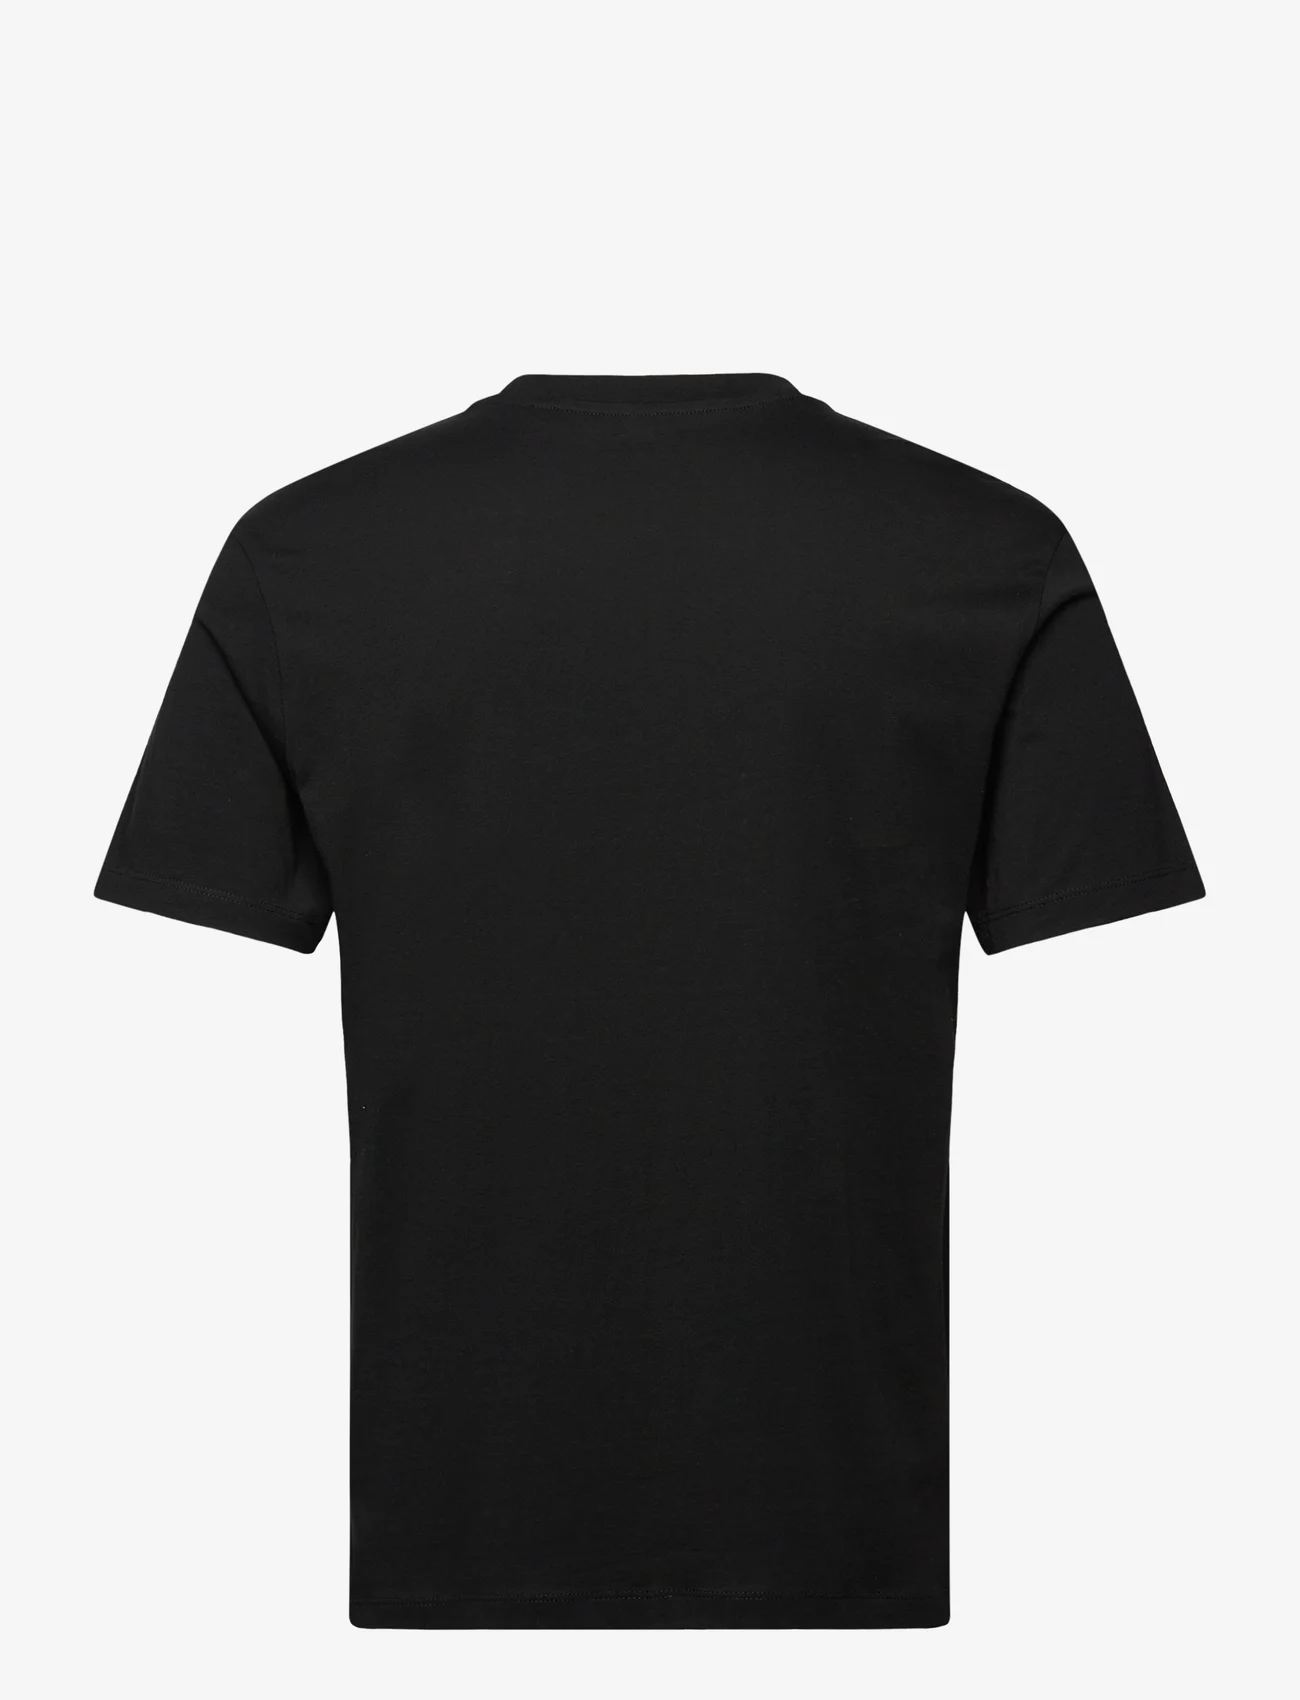 Tom Tailor - relaxed printed t-shirt - lägsta priserna - black - 1